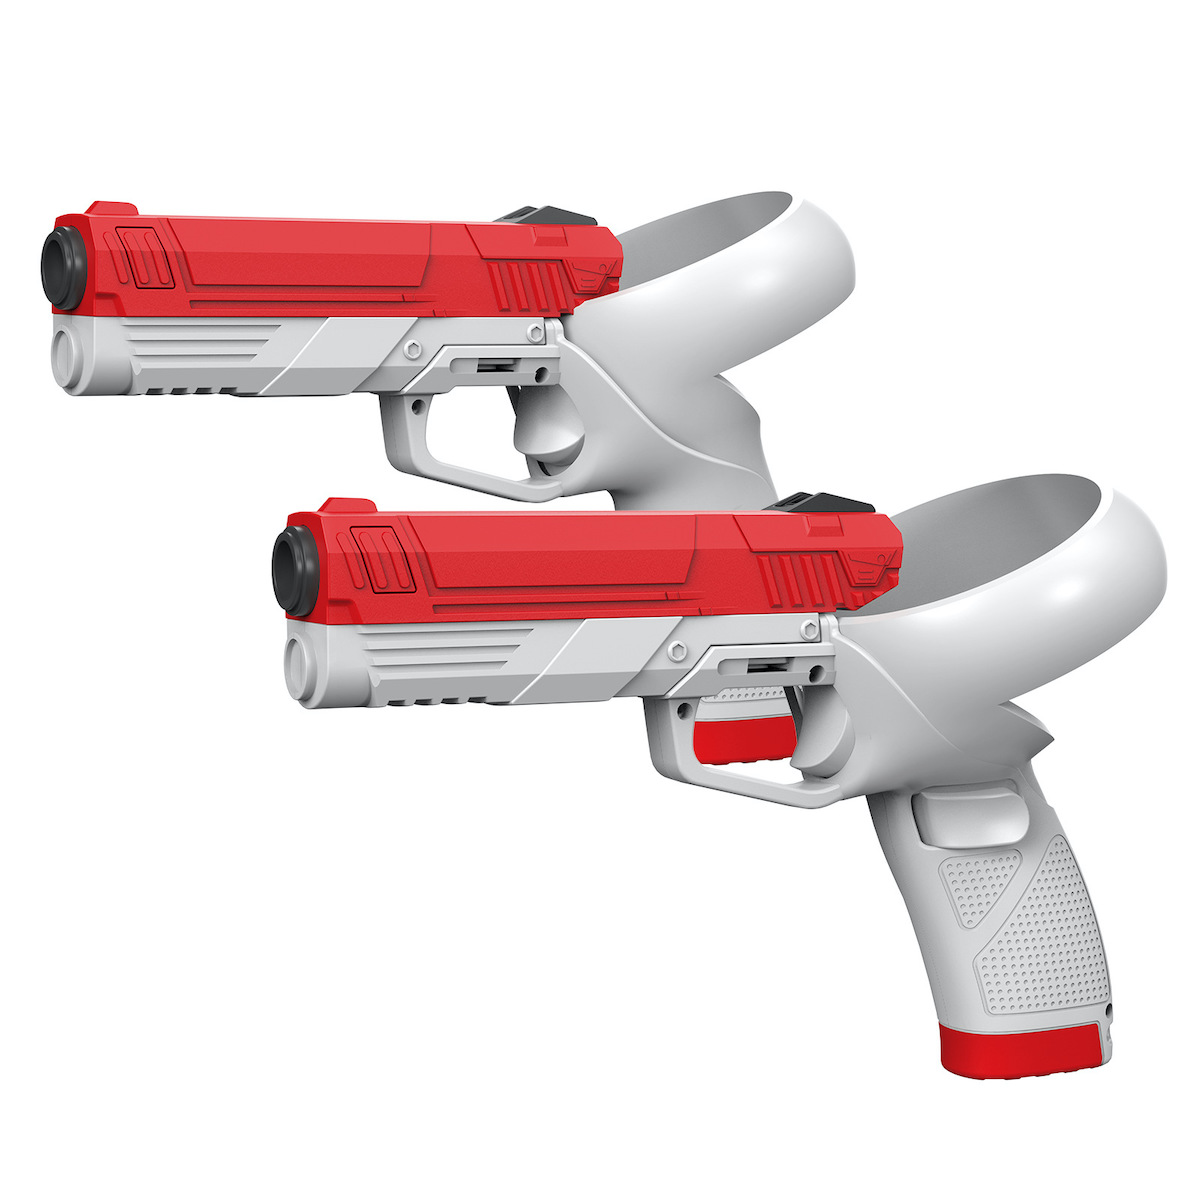 SKU-01-白红手柄枪